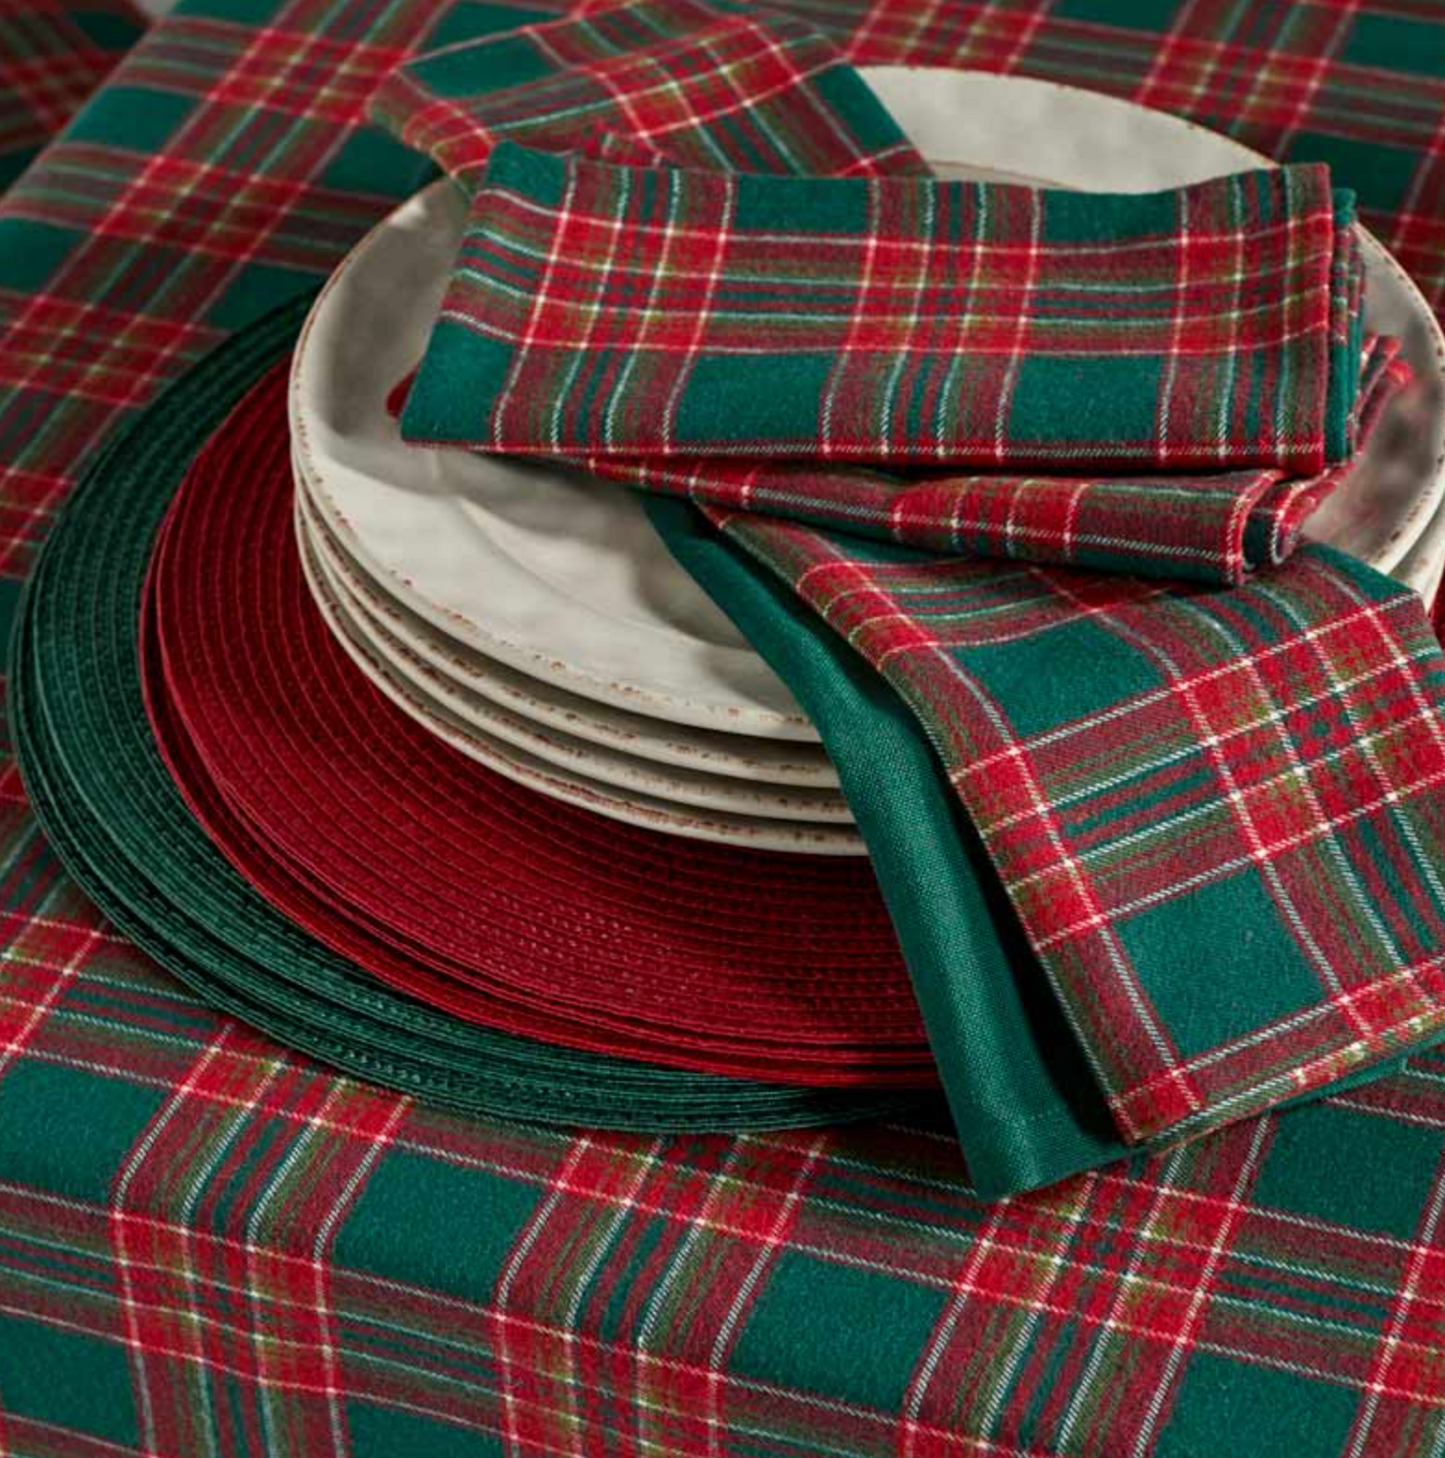 Festive tartan tablecloth